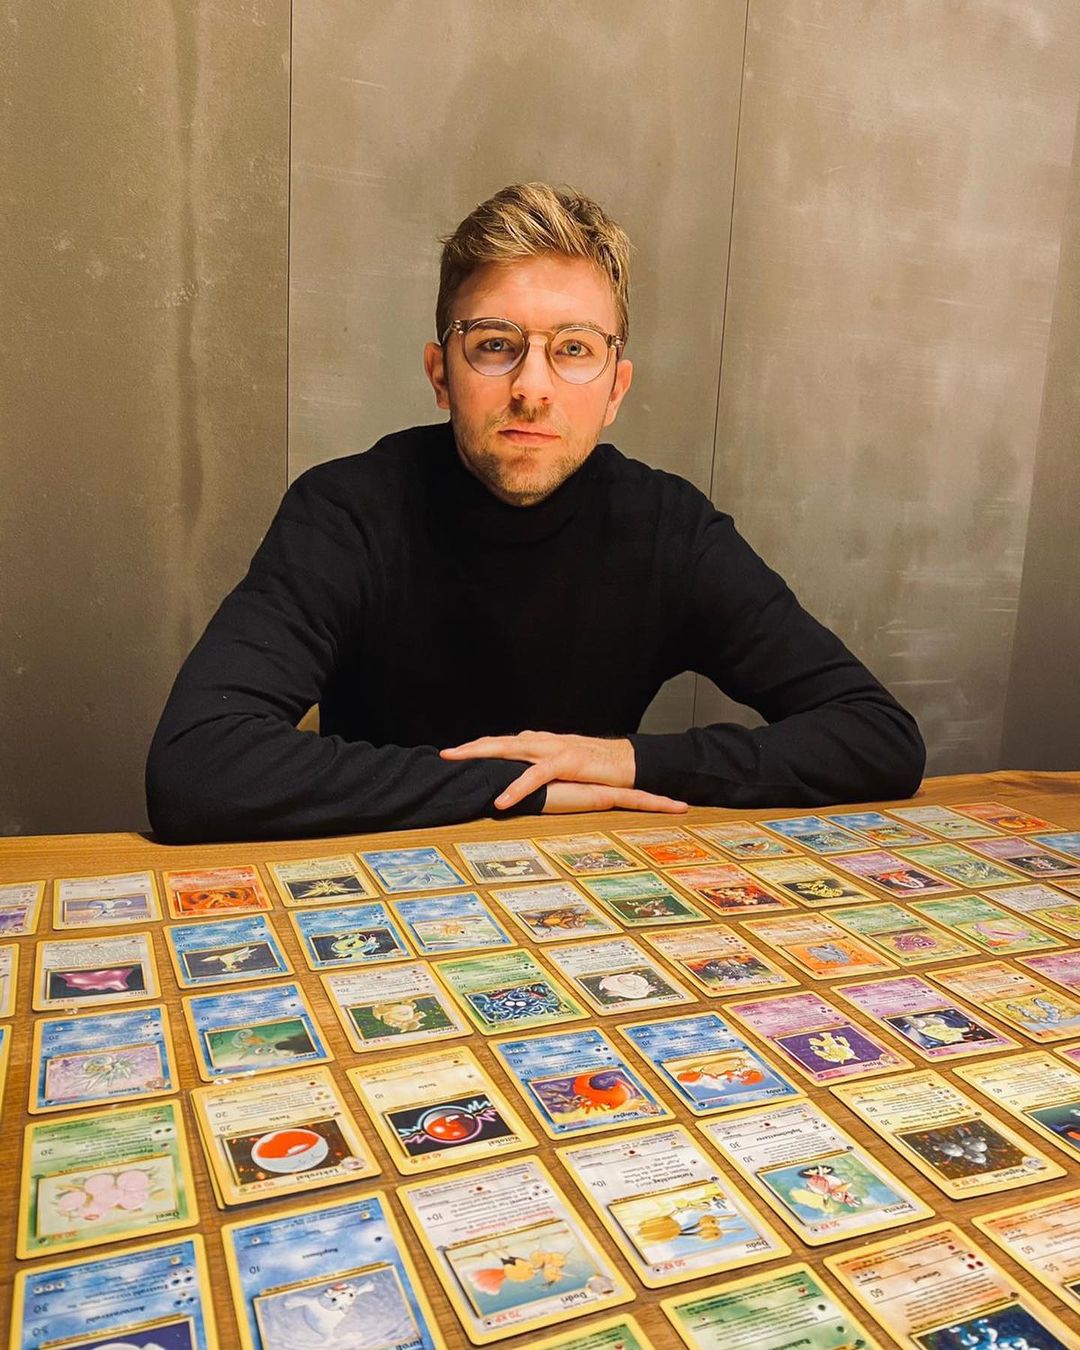 Christoph Kramer nổi như cồn vì thú vui sưu tập thẻ bài Pokemon. Ảnh: Instagram.